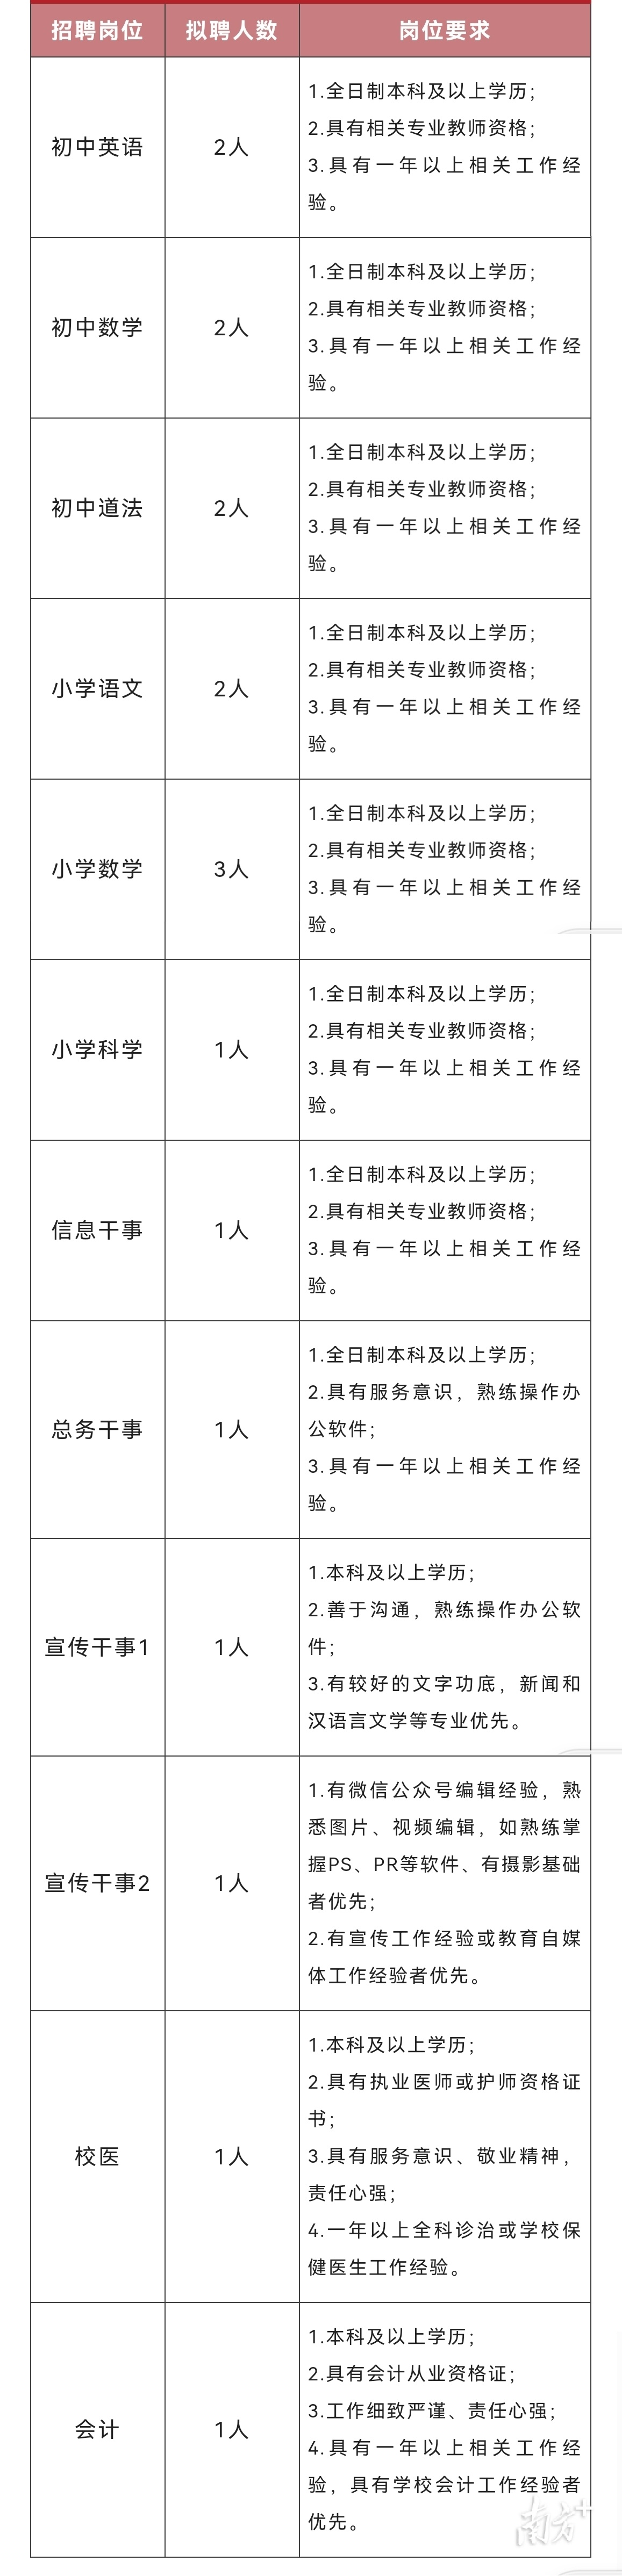 深圳中学龙岗学校面向社会公开招聘18名教职人员